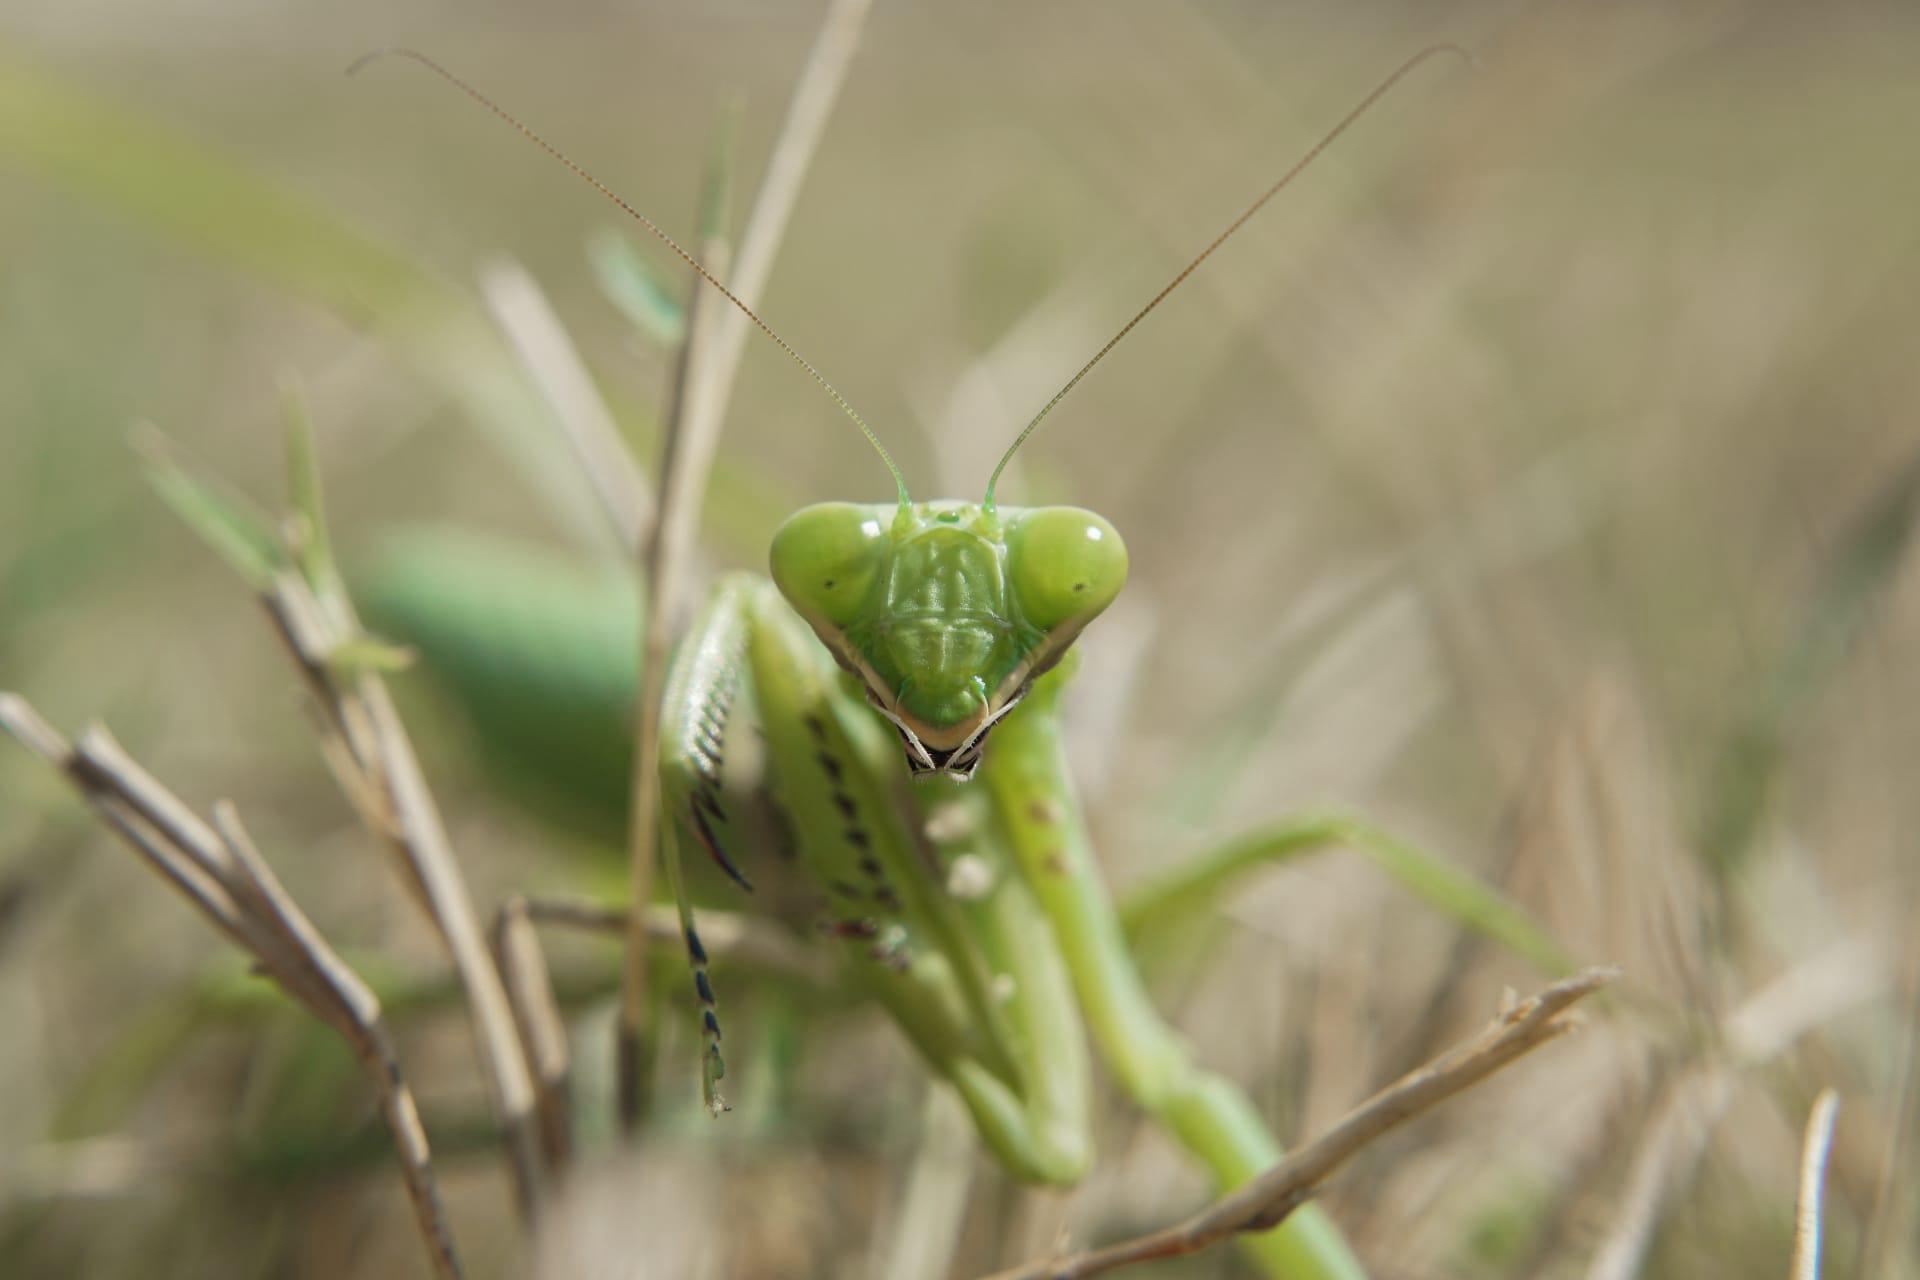 Praying mantis pictures